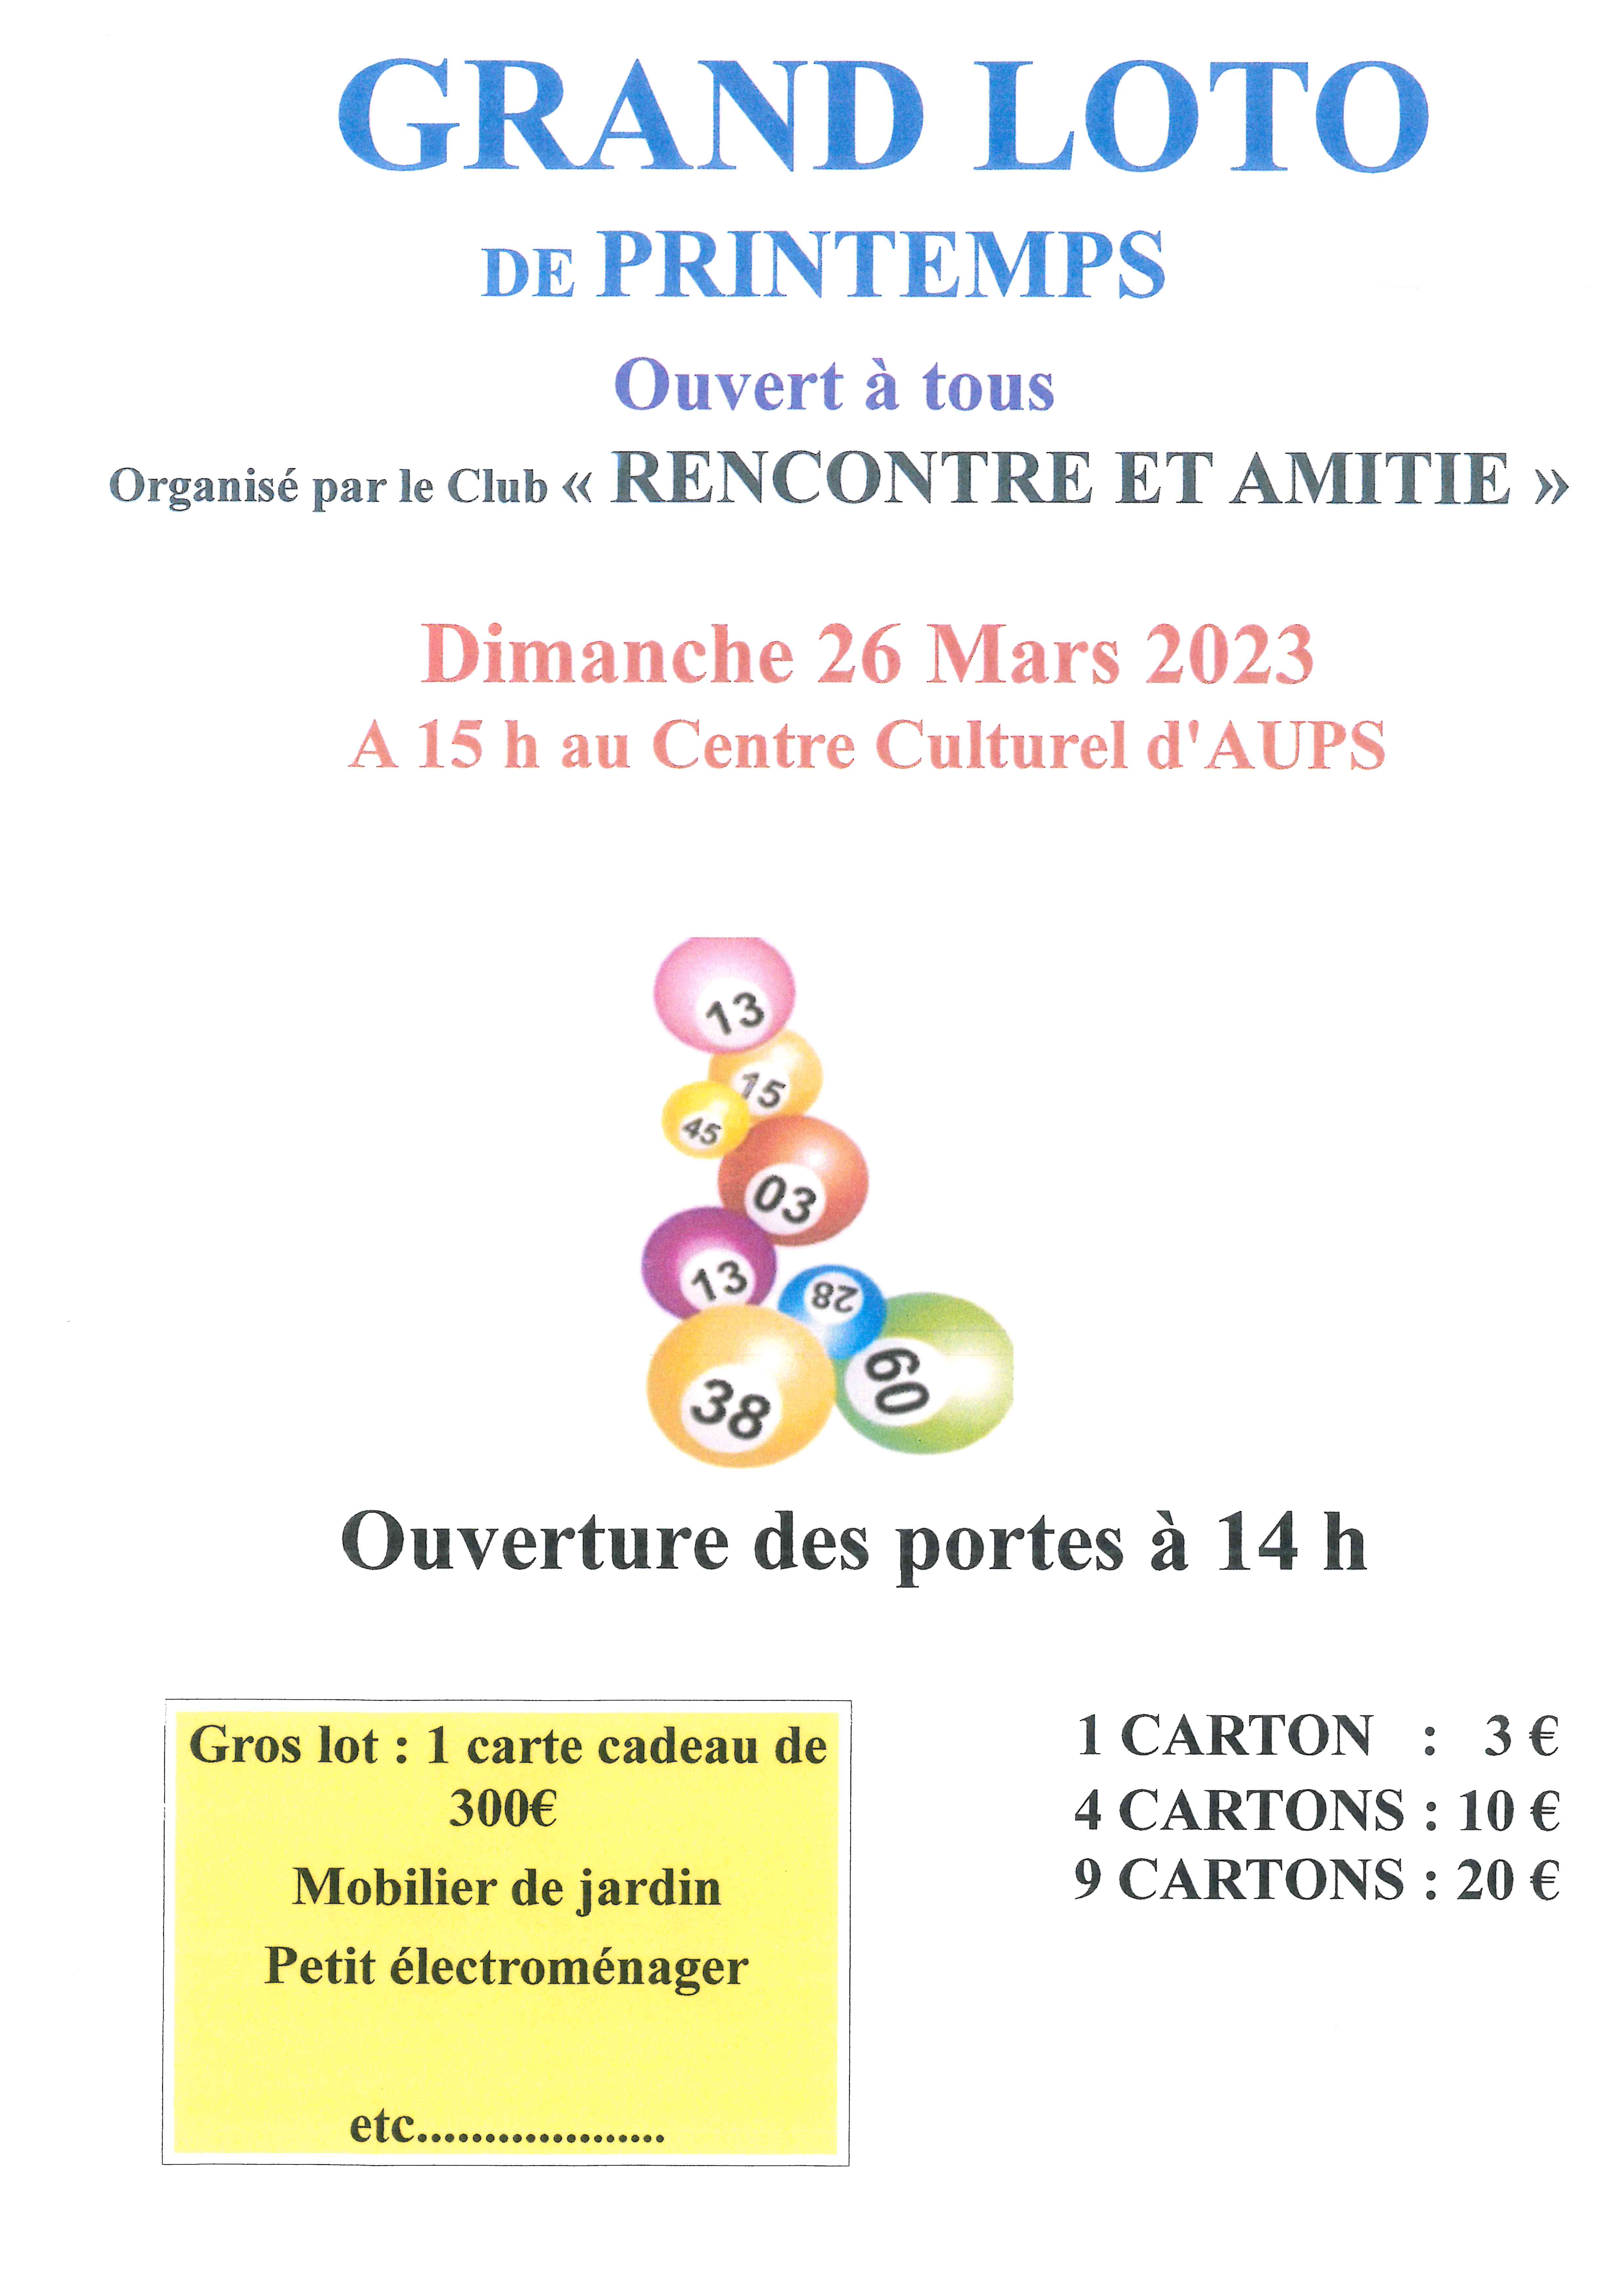 20/11/2022 - Loto Rencontre et Amitié